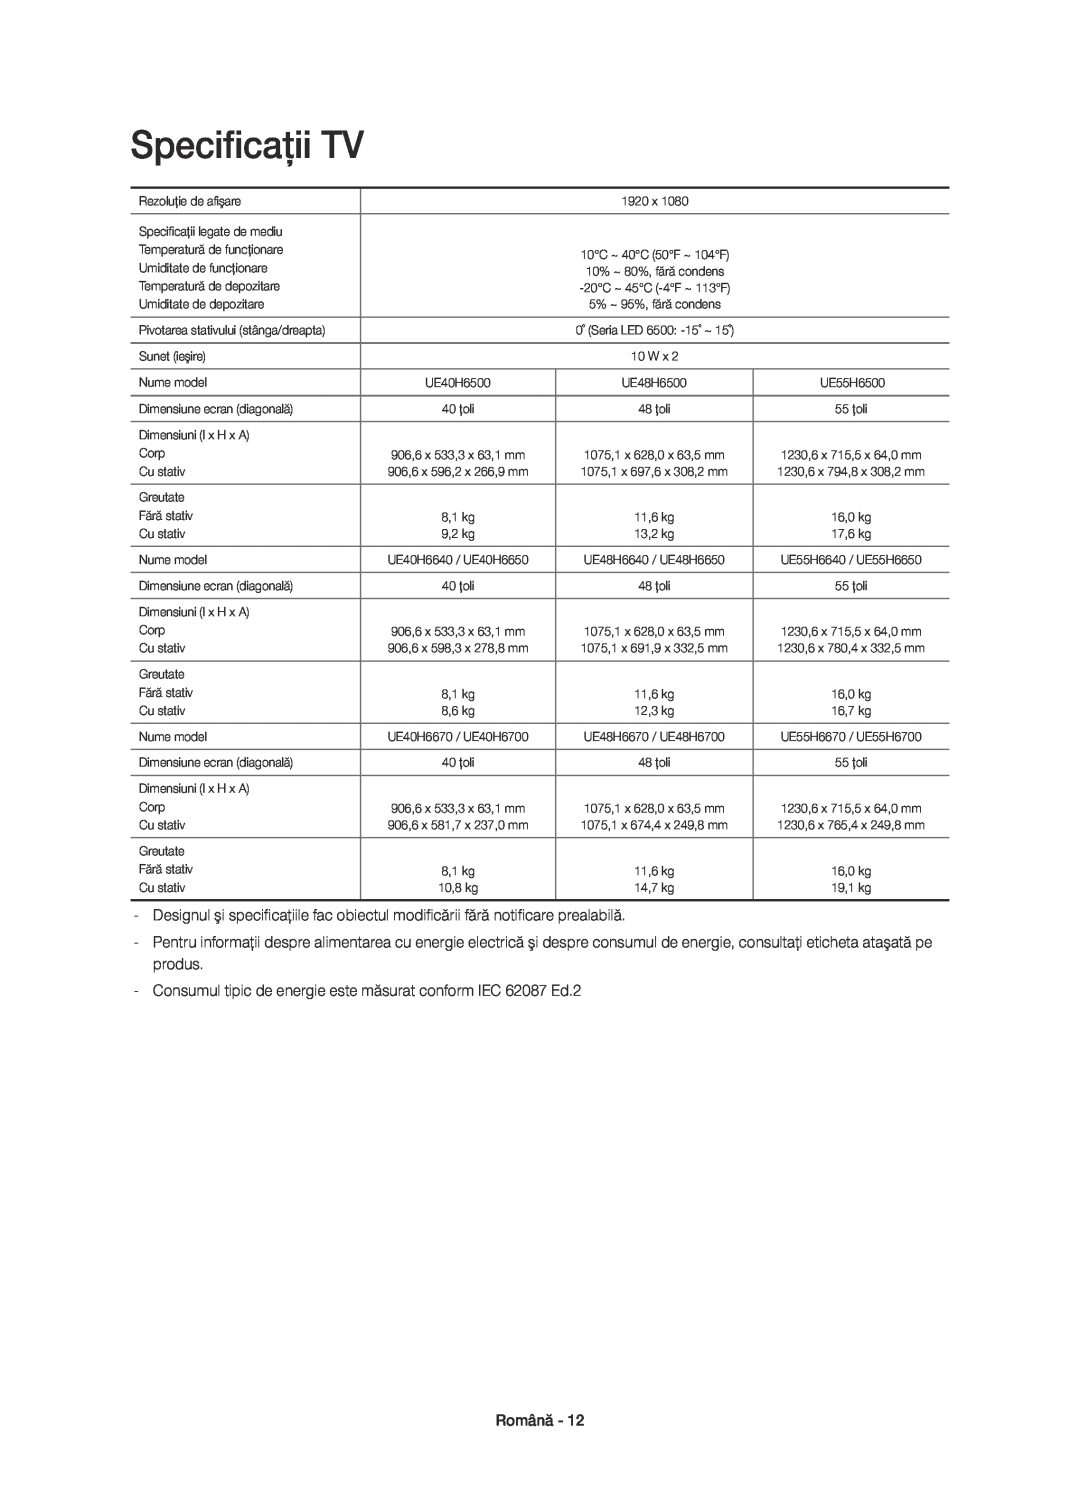 Samsung UE55H6640SLXXN manual Specificaţii TV, Consumul tipic de energie este măsurat conform IEC 62087 Ed.2, Română 